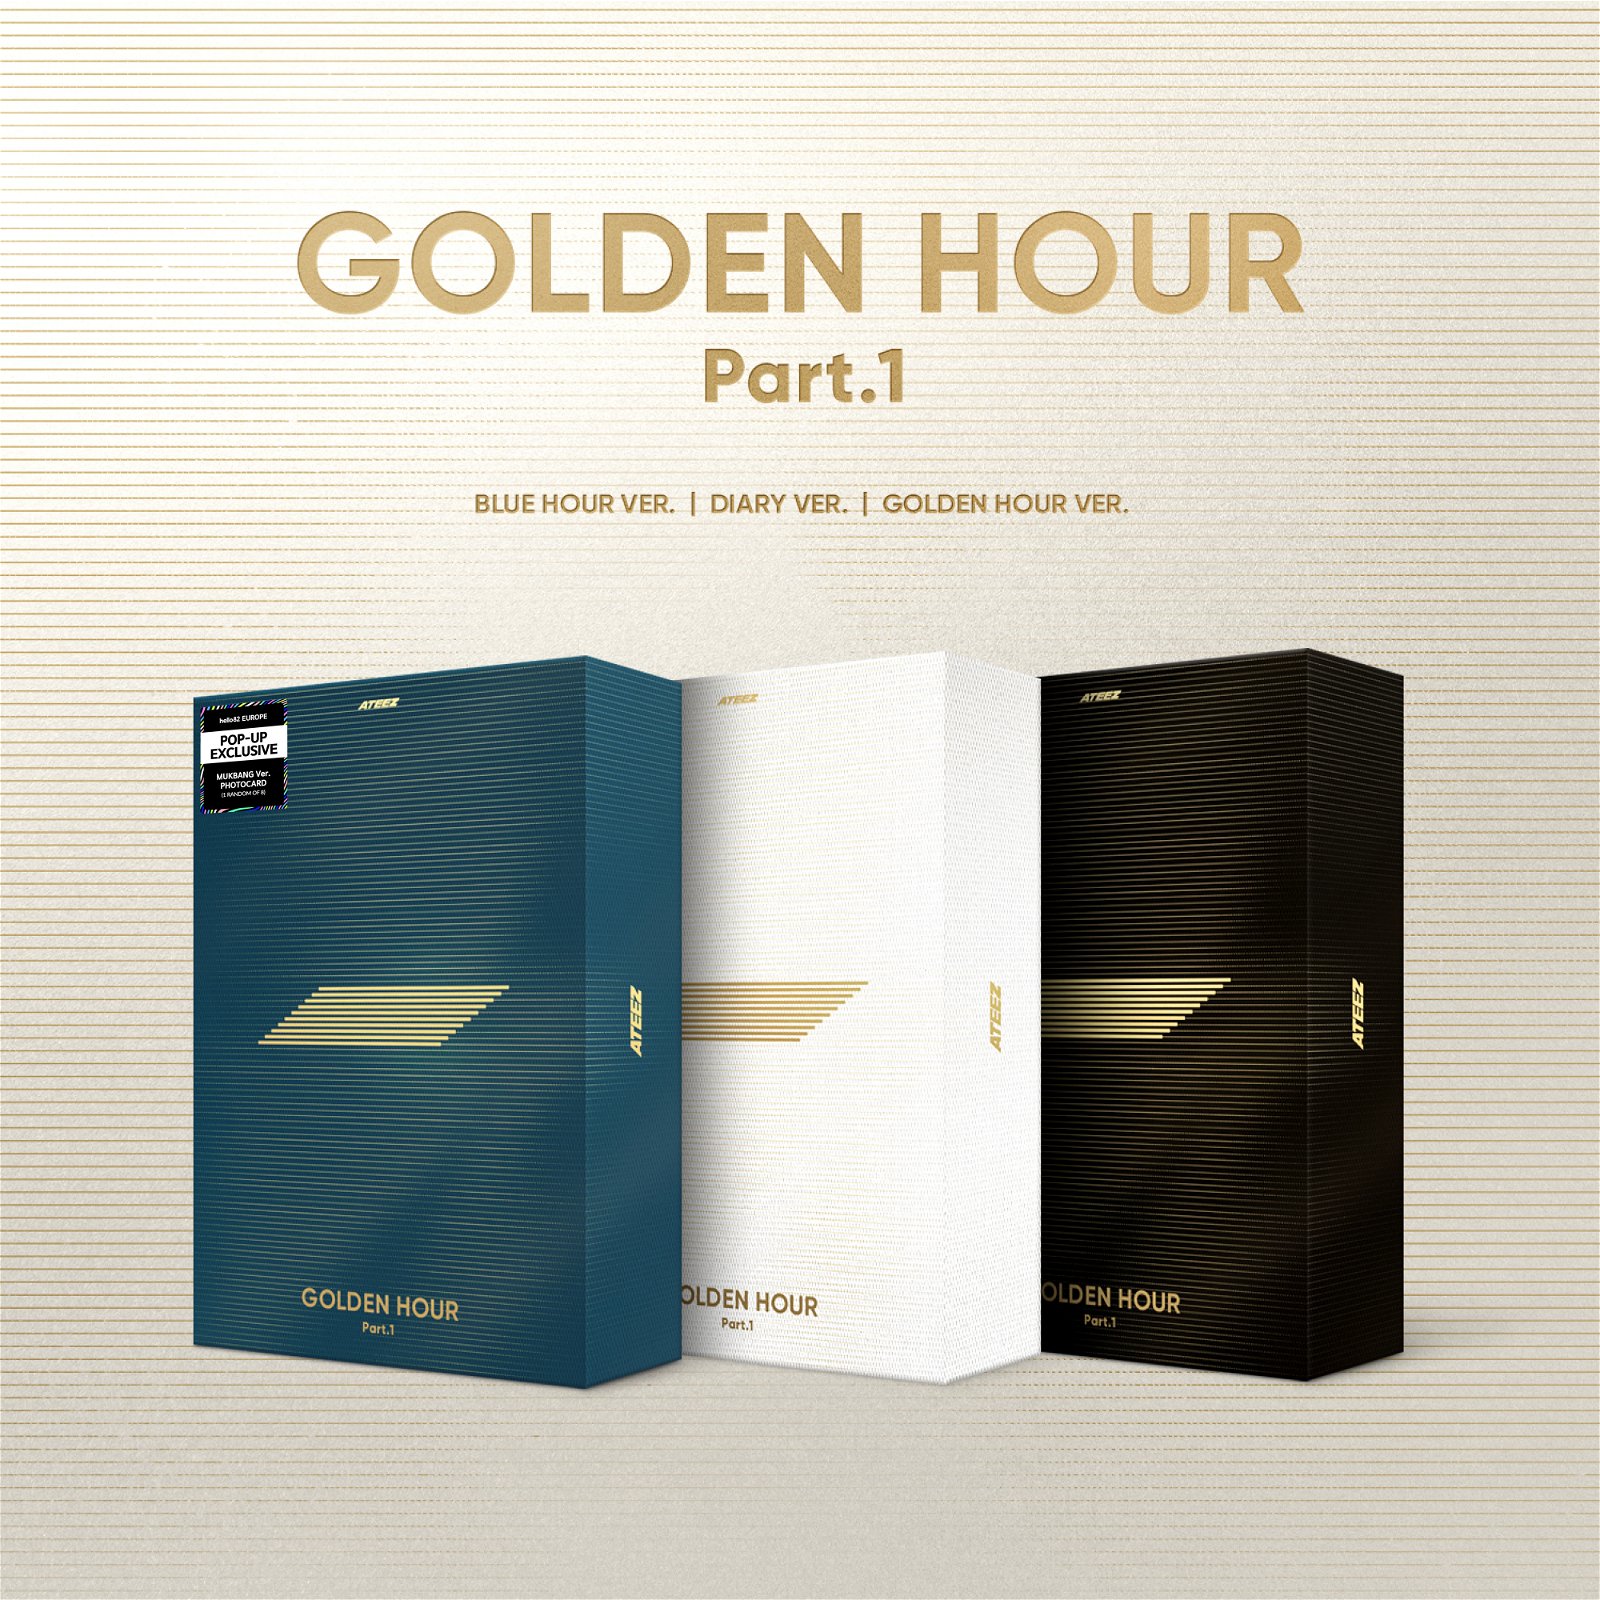 Golden Hour Pt.1 Hello82 Pop-Up Exclusive Bundle edition